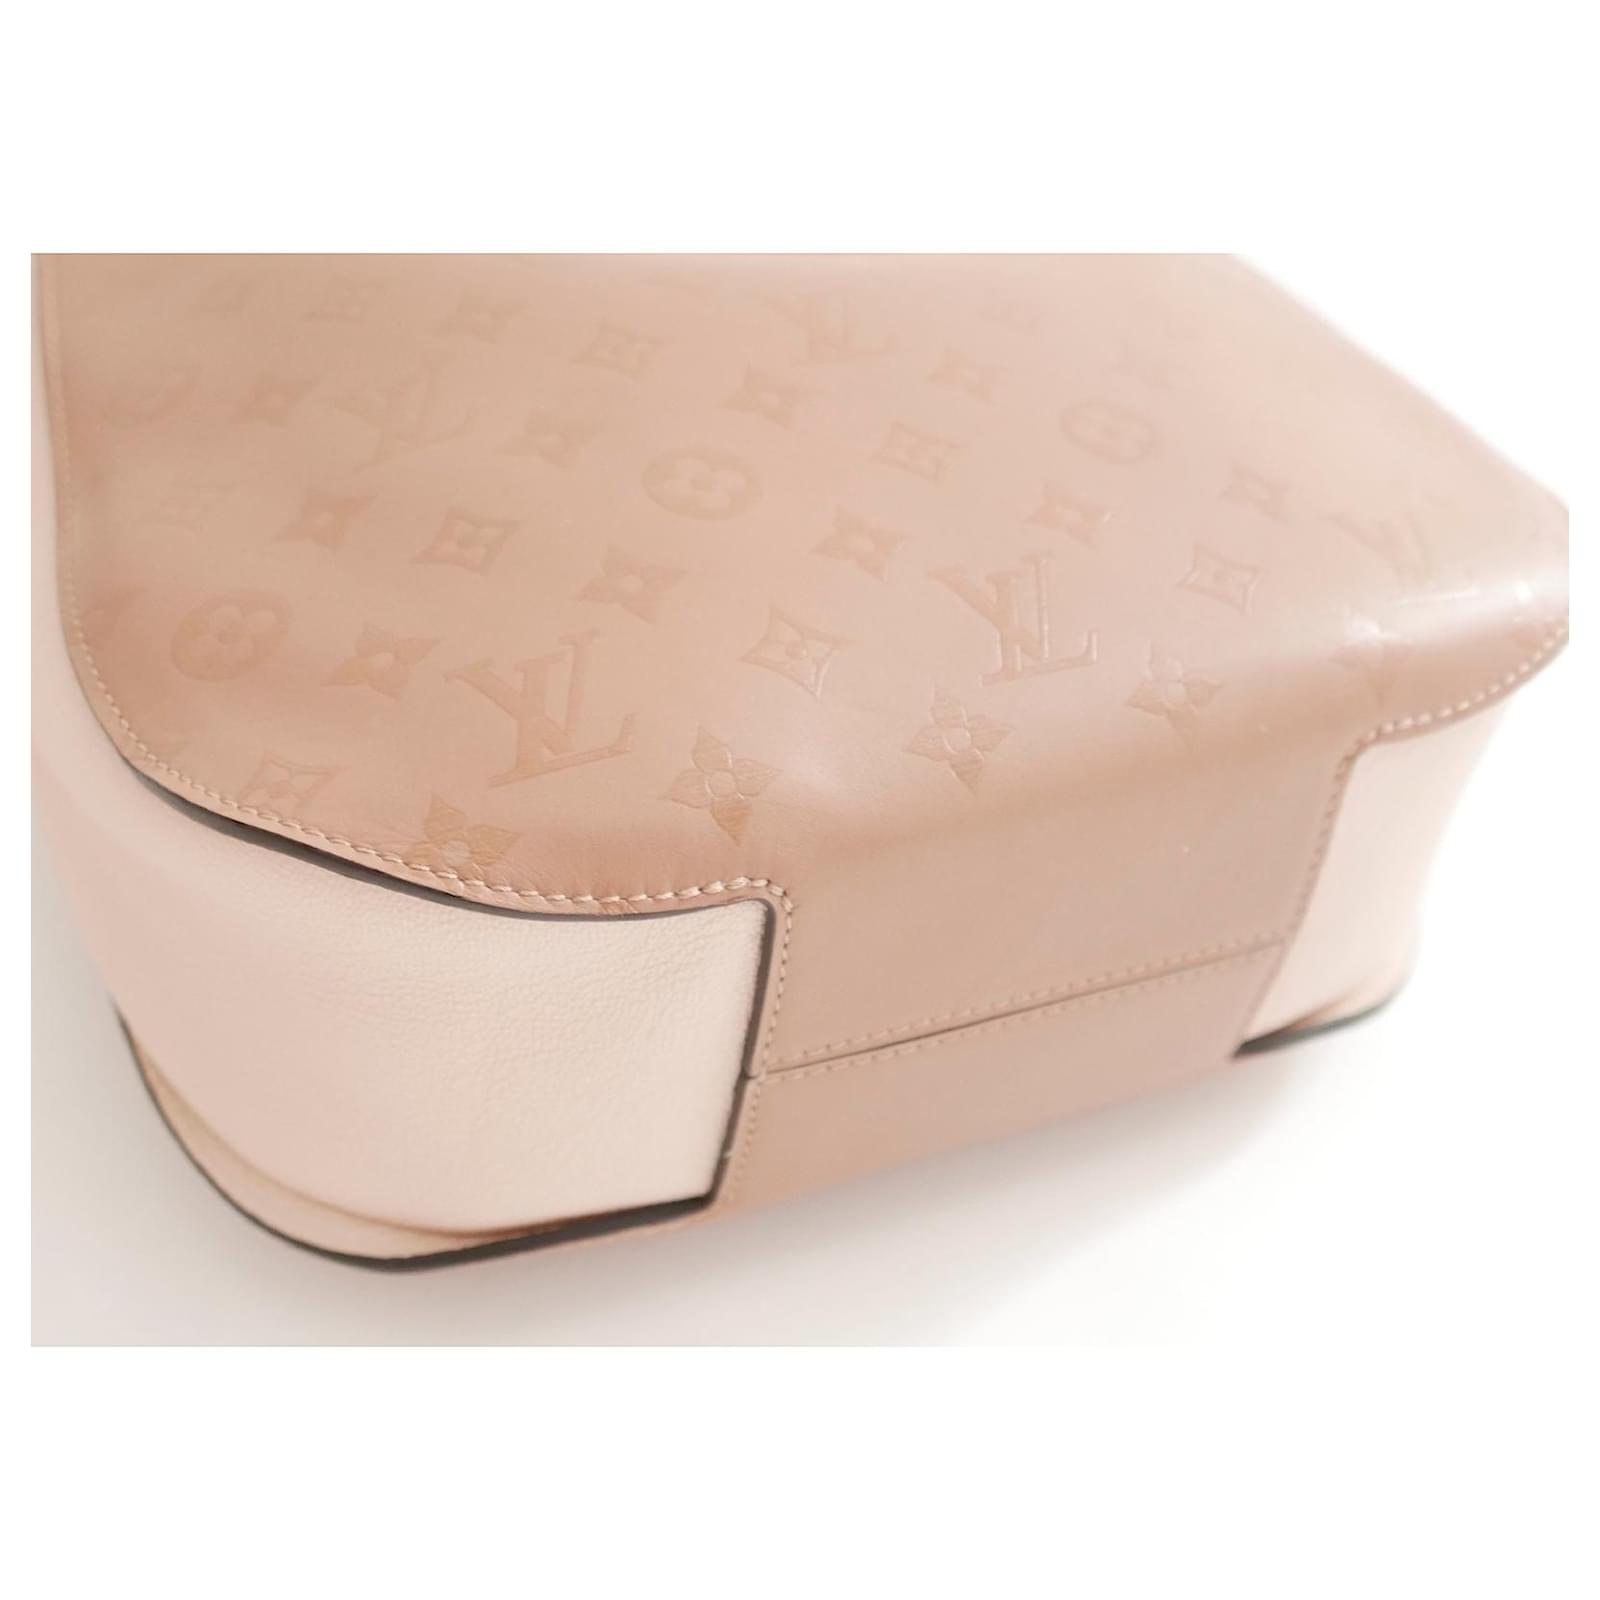 Handbags Louis Vuitton Louis Vuitton Very Hobo Bag Sesame Creme